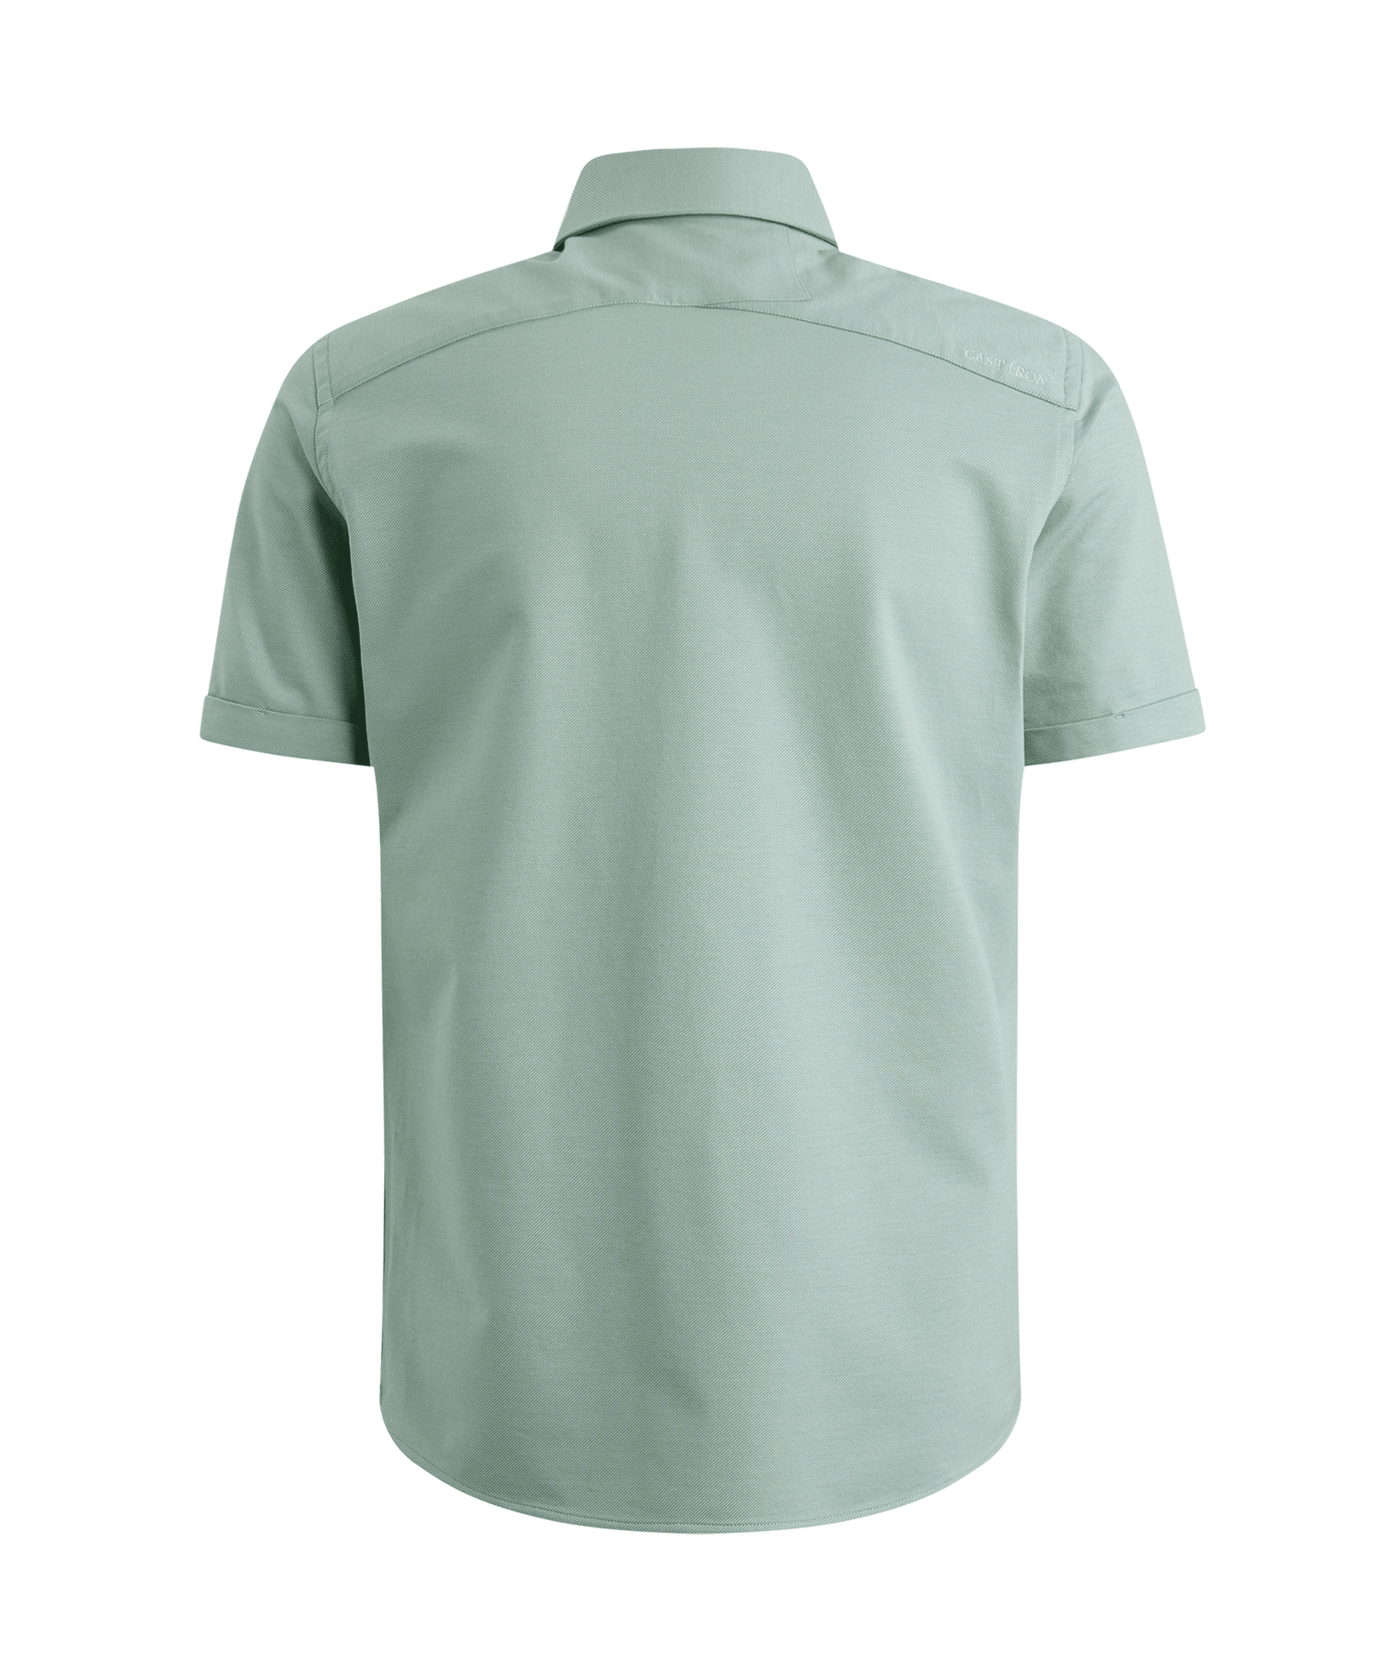 Cast Iron - Csis2404274 - Twill Jersey Shirt - 6021 Slate Grey